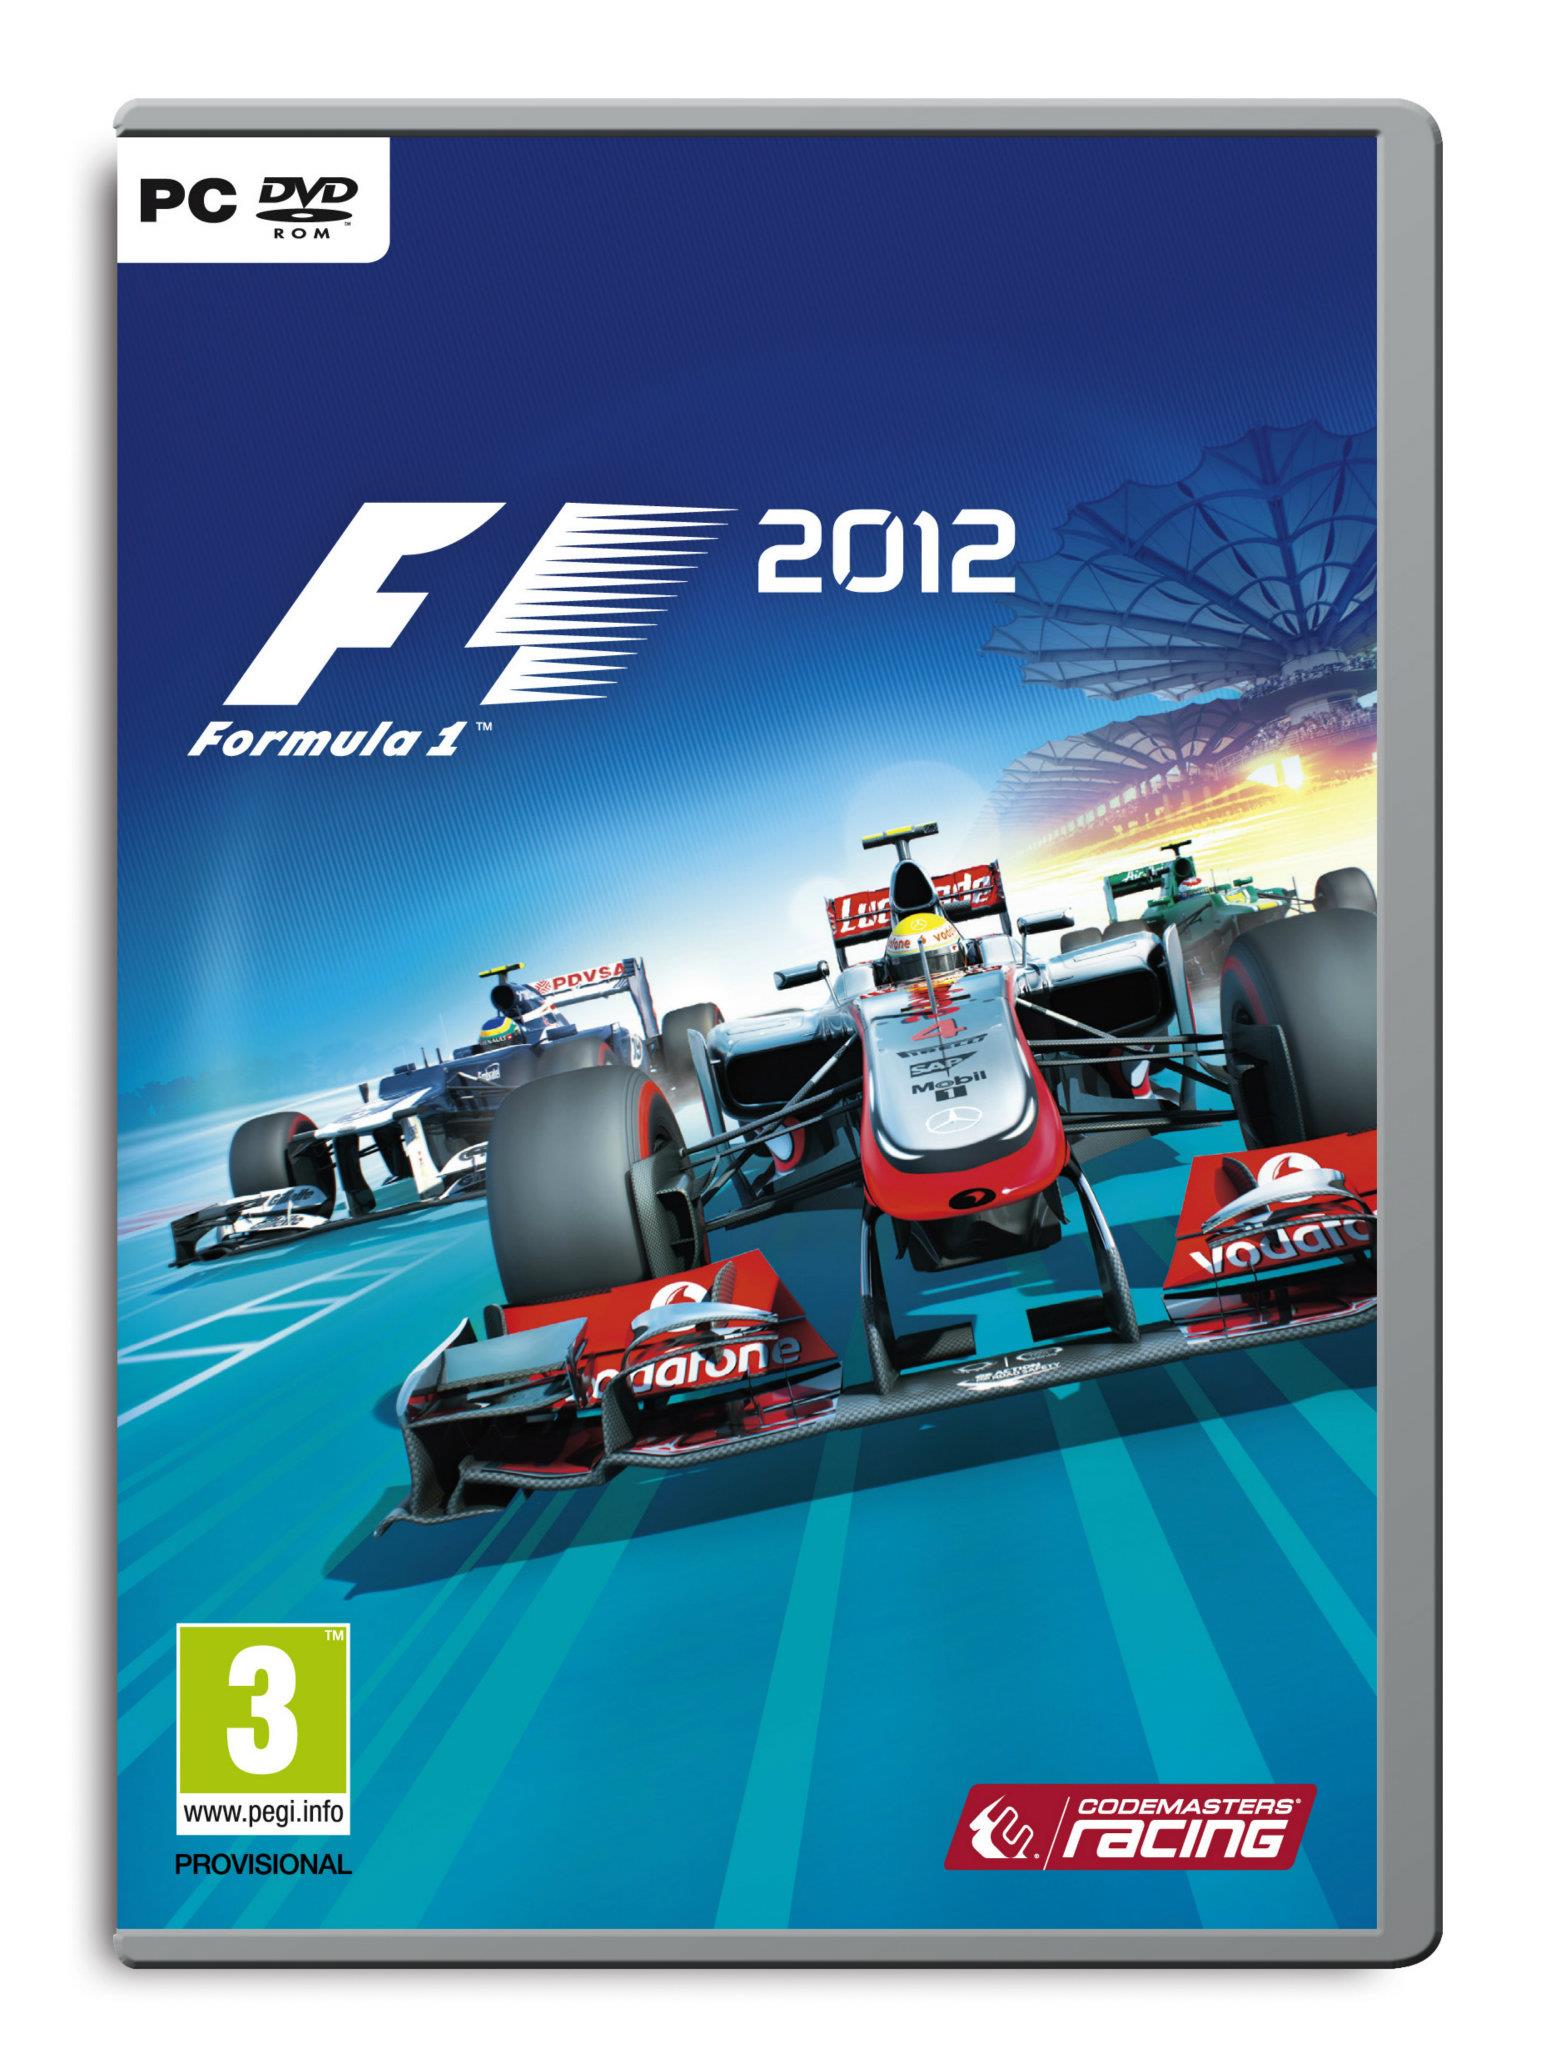 Rozhodněte o obalu krabičky F1 2012 67258